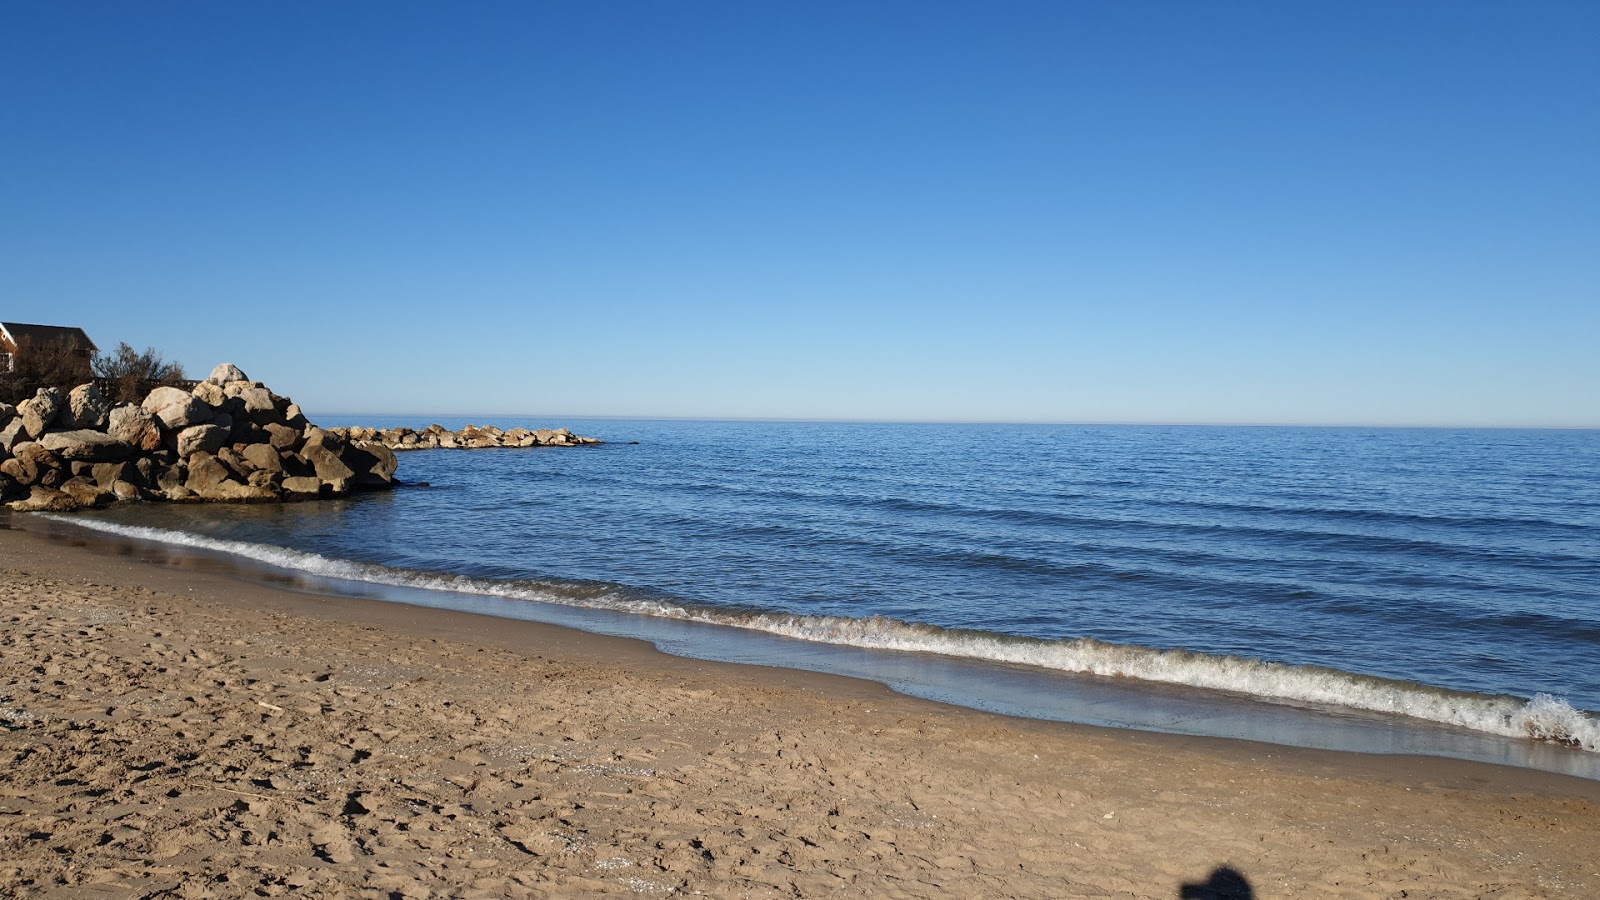 Playa el Marenyet'in fotoğrafı kahverengi kum yüzey ile